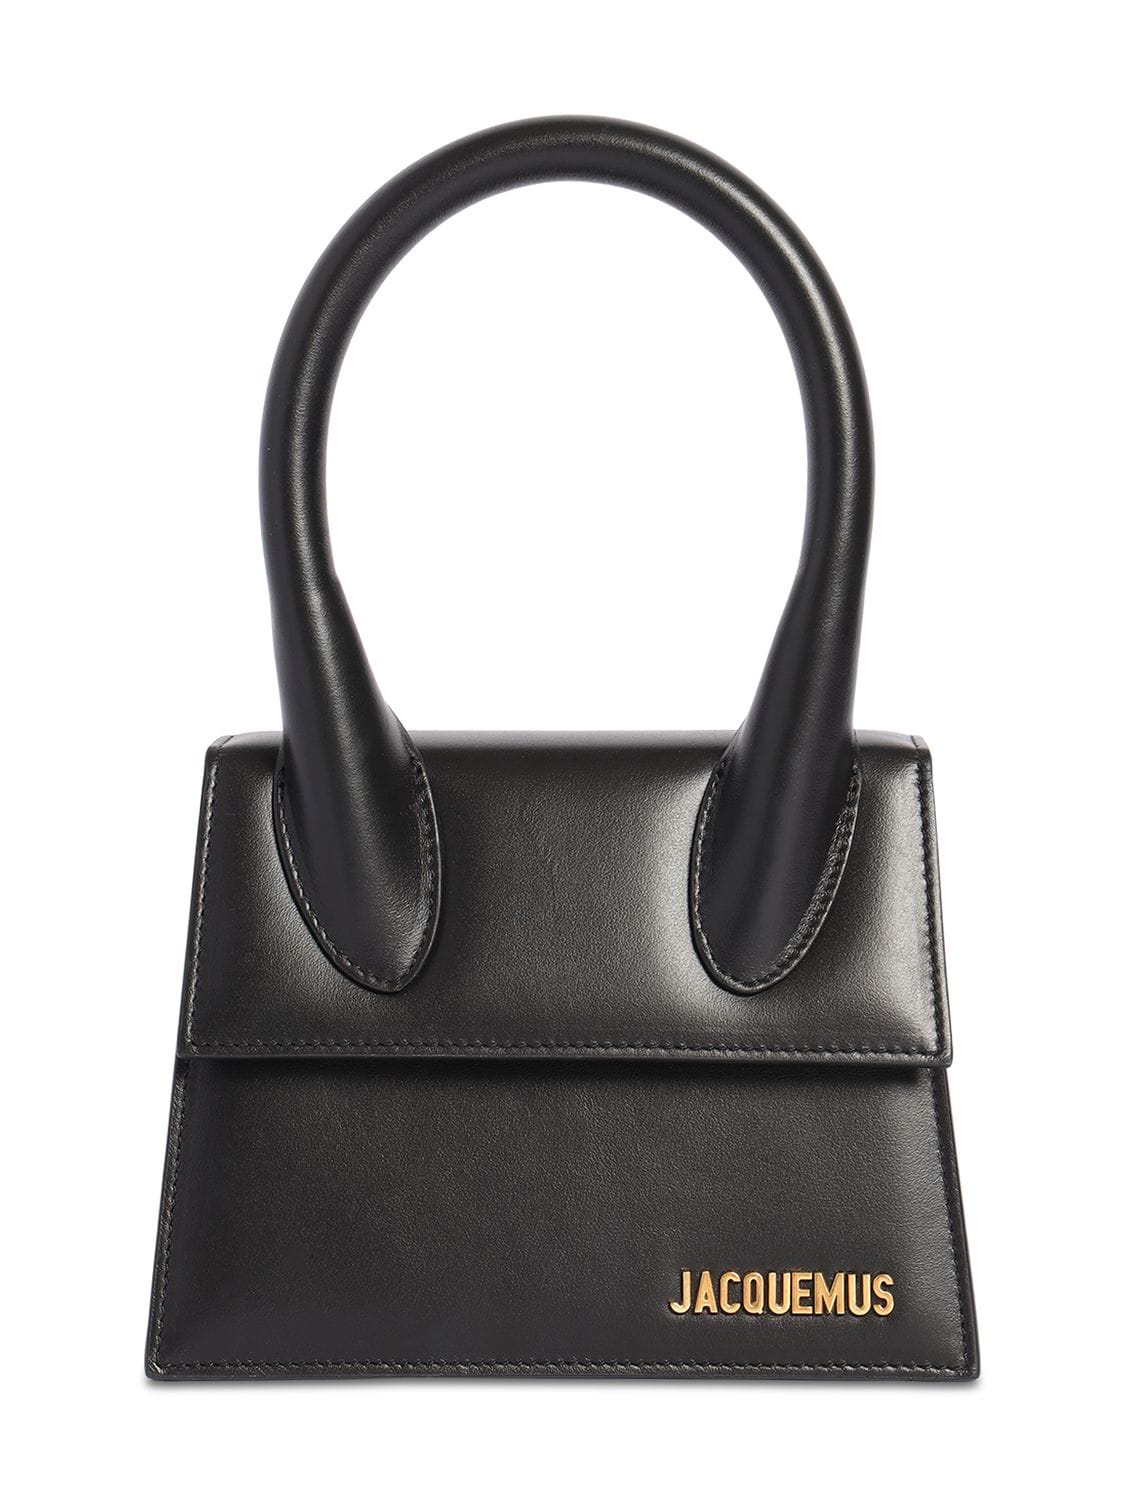 JACQUEMUS Le Chiquito Moyen Leather Bag